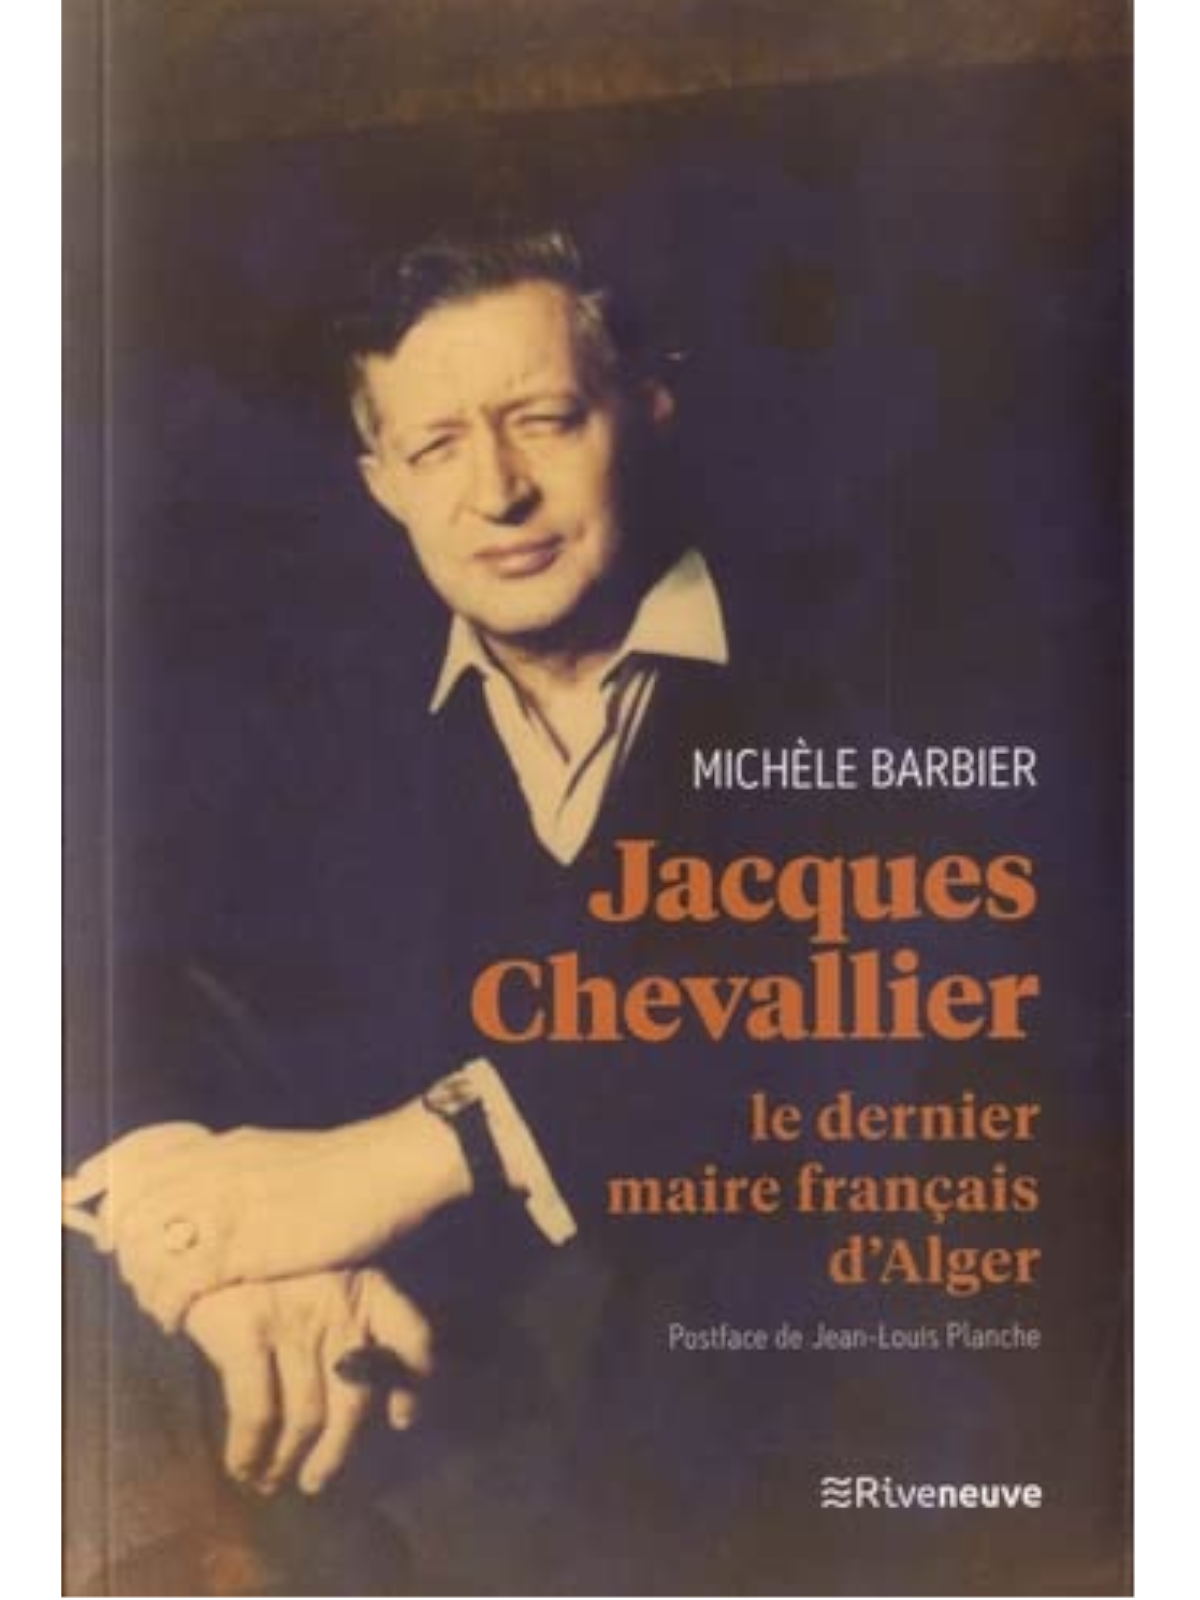 Michèle Barbier: Jacques Chevallier – Le dernier maire français d’Alger